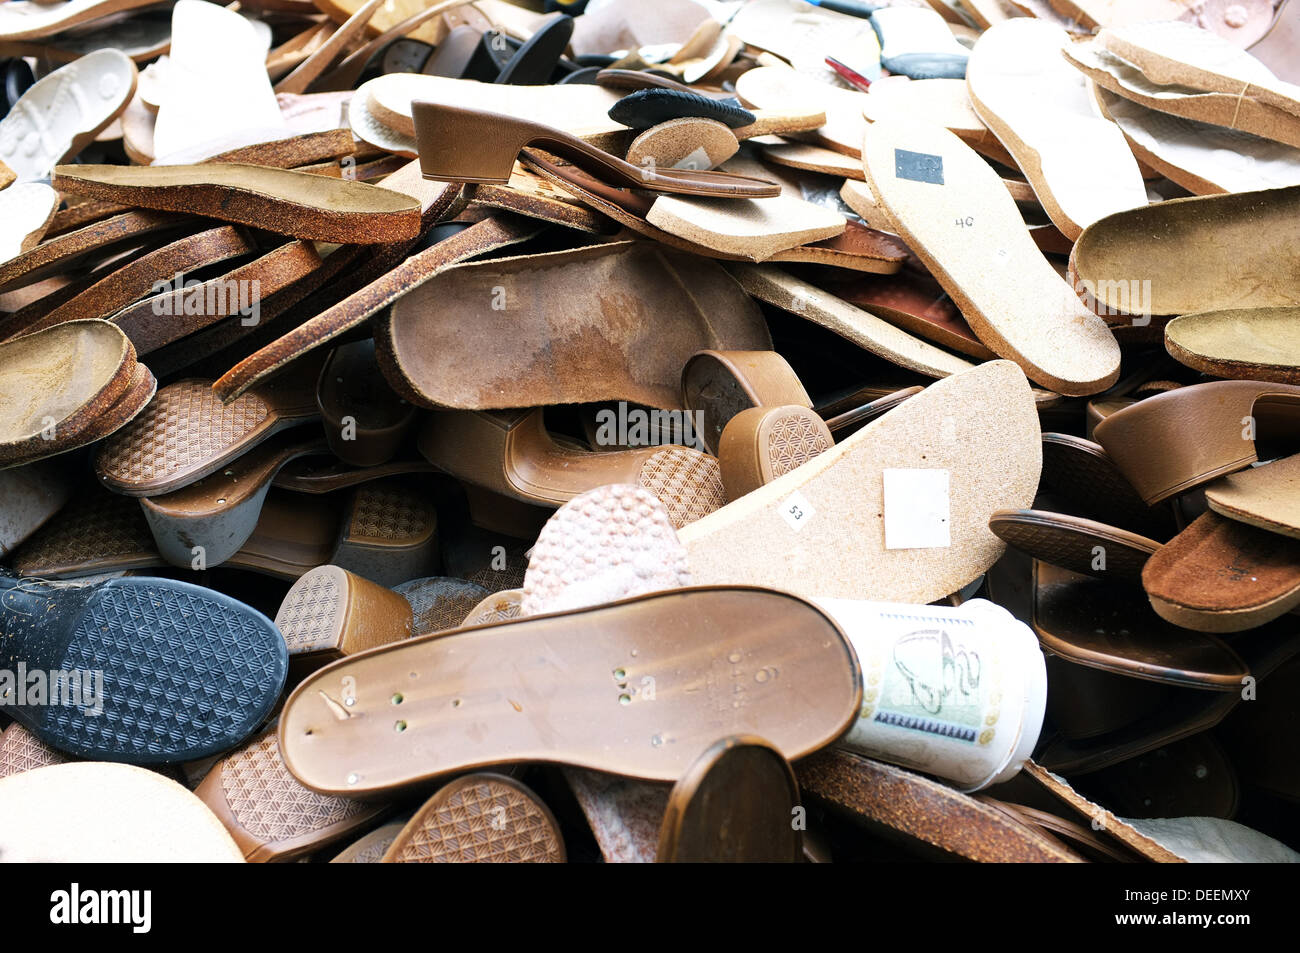 Ein Haufen von Schuhen und Schuhabsätze in einen Müllcontainer. Stockfoto